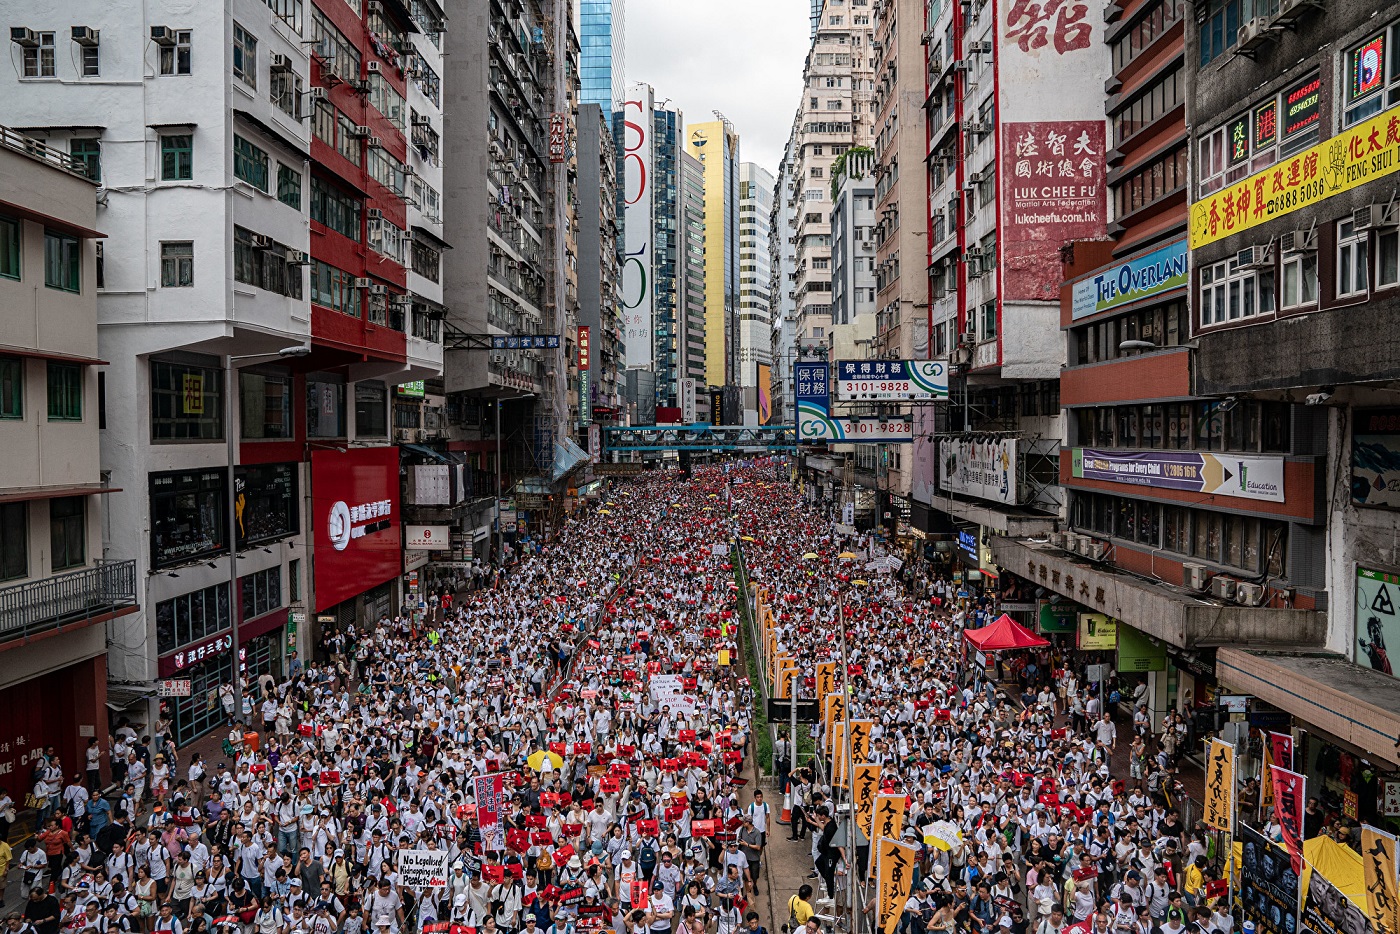 محتجون يسيرون في شارع خلال مظاهرة احتجاجية ضد مشروع قانون تسليم المطلوبين في 9 يونيو/حزيران 2019 في هونغ كونغ.